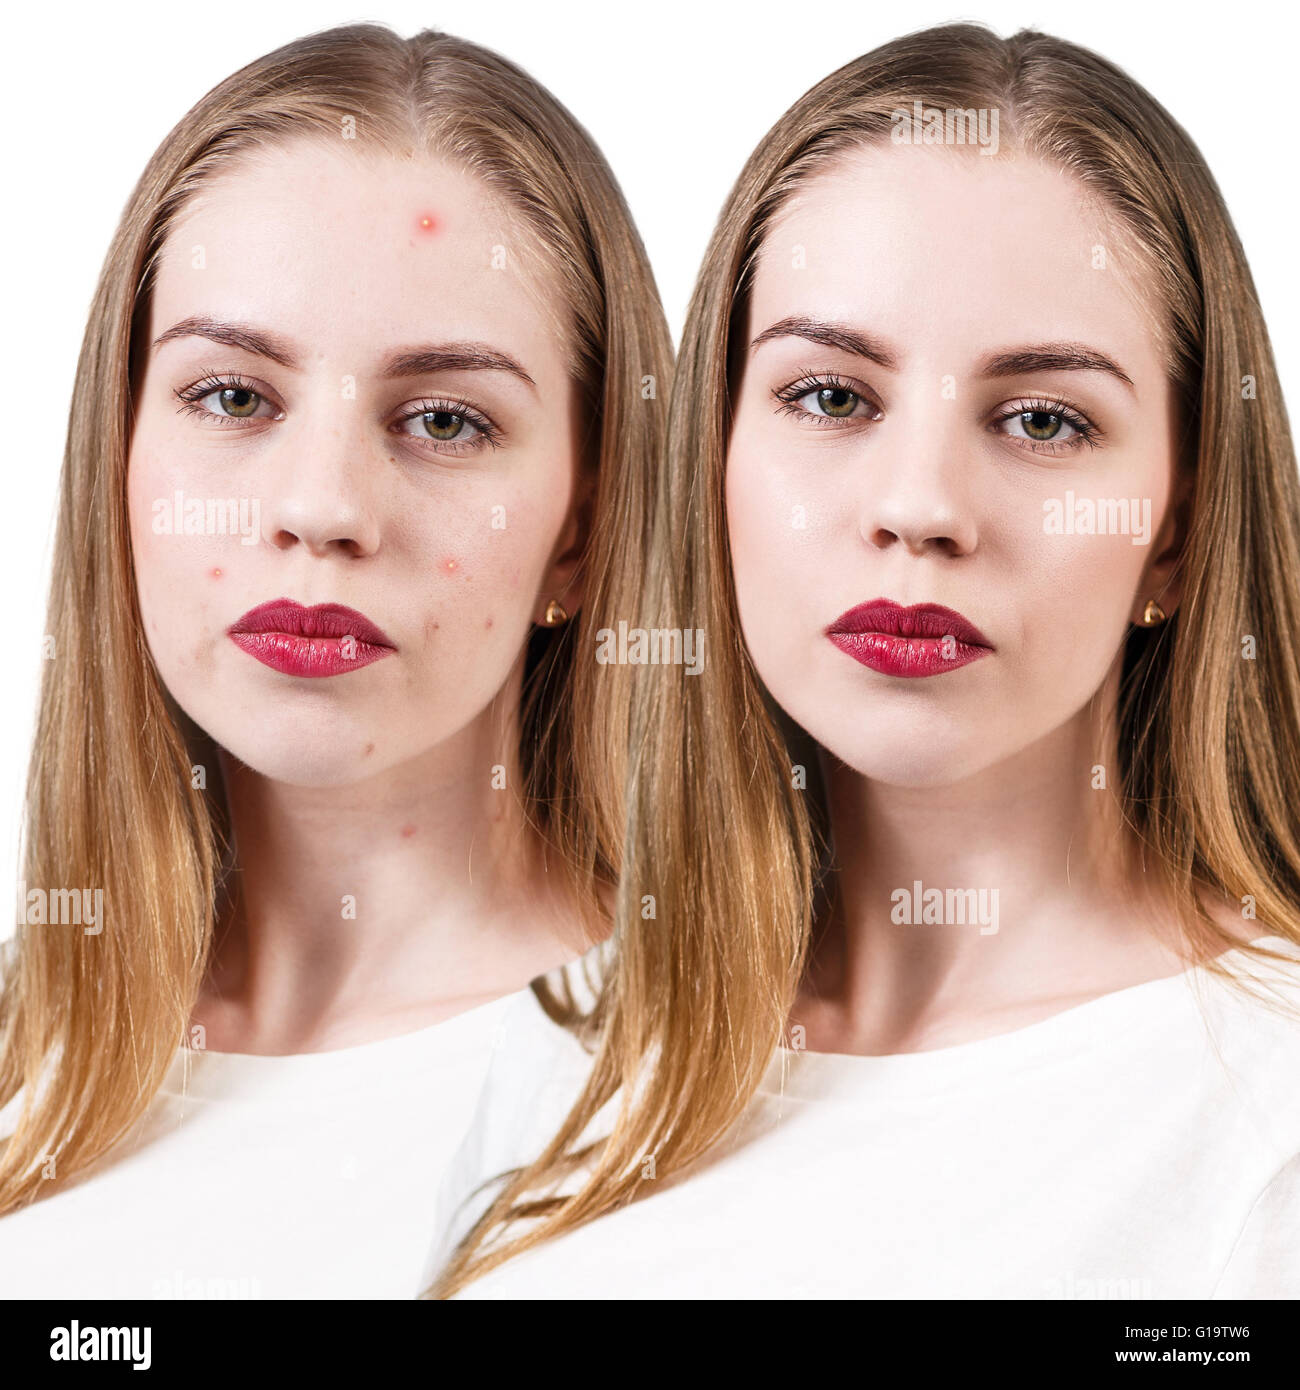 Femme avec des problèmes de peau sur son visage avant et après traitement, isolated on white Banque D'Images